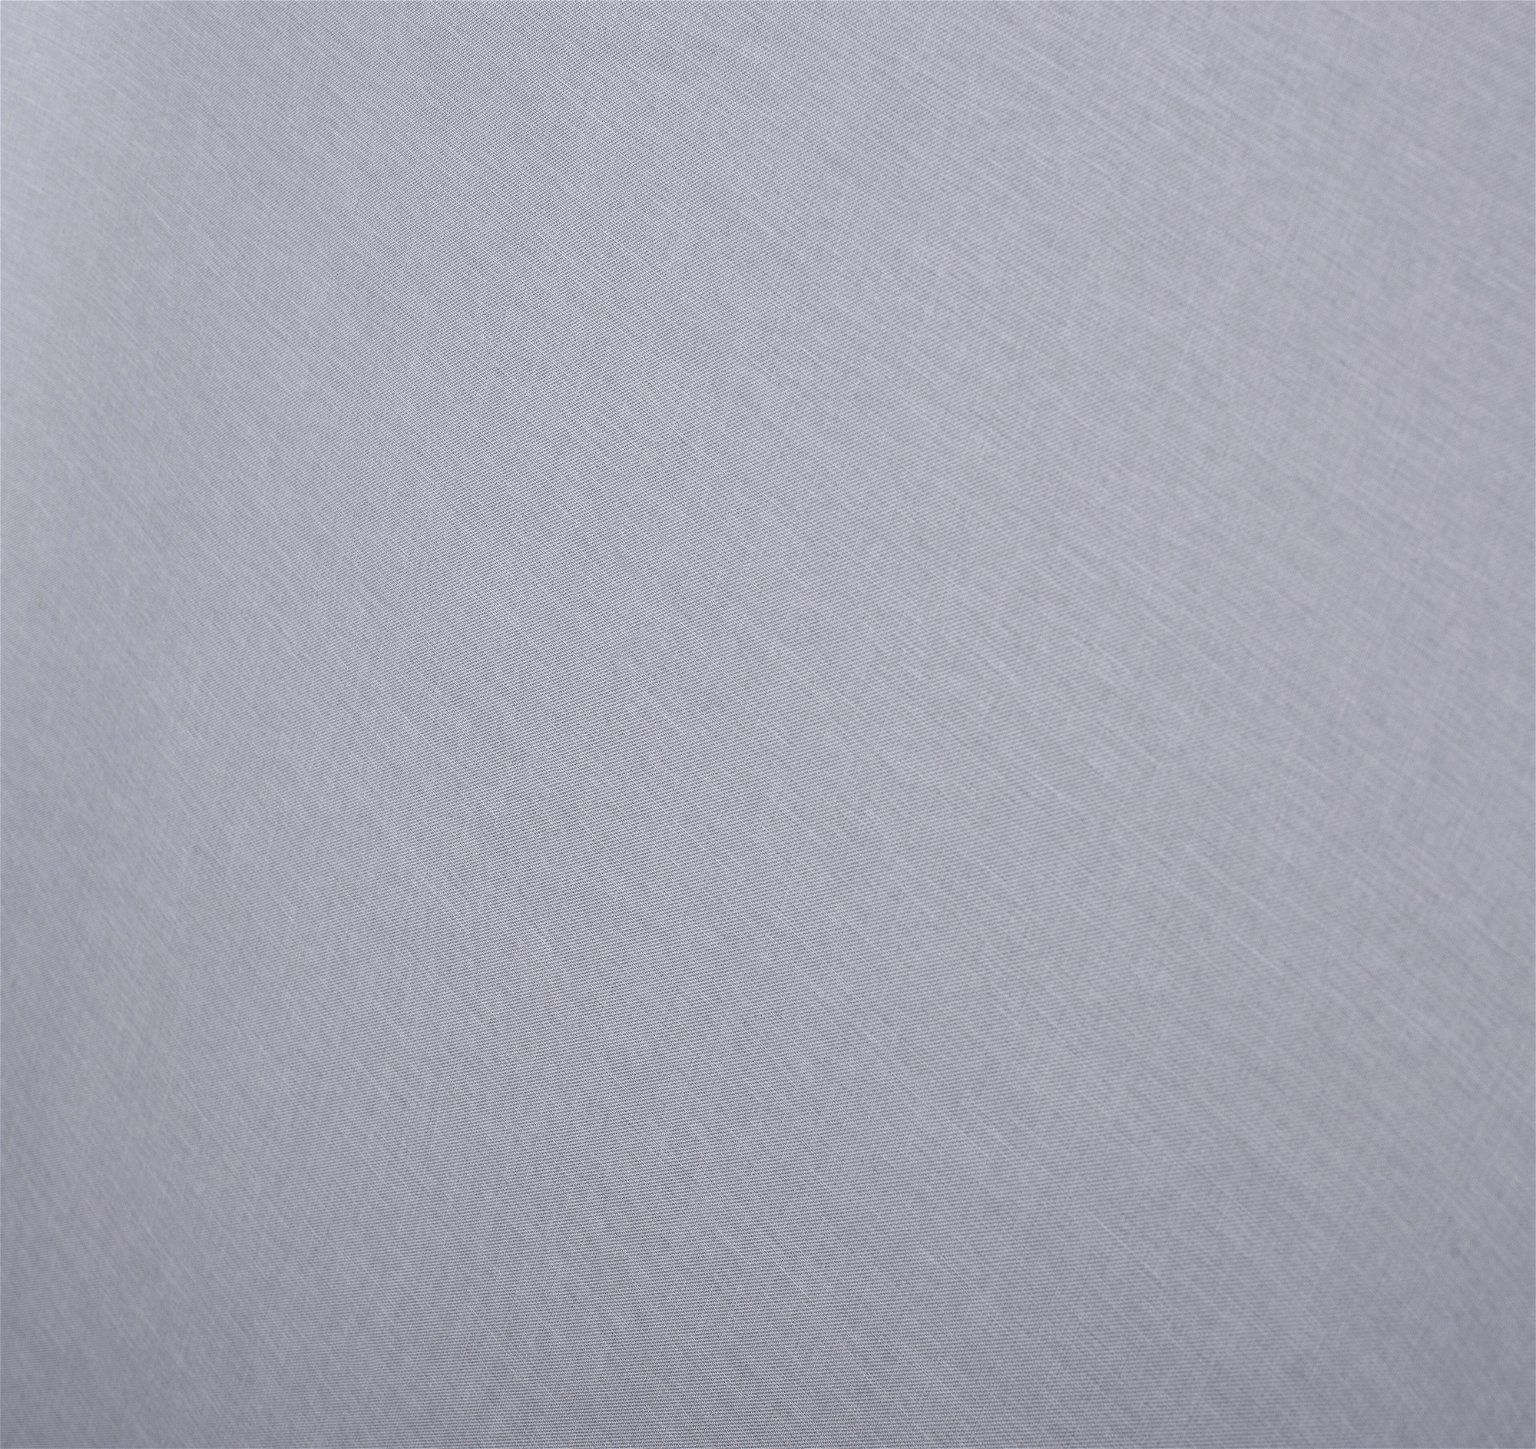 Klasikinė ritininė užuolaida MILAN, šv. pilkos sp., 60 x 170 cm, 100 % poliesteris - 4